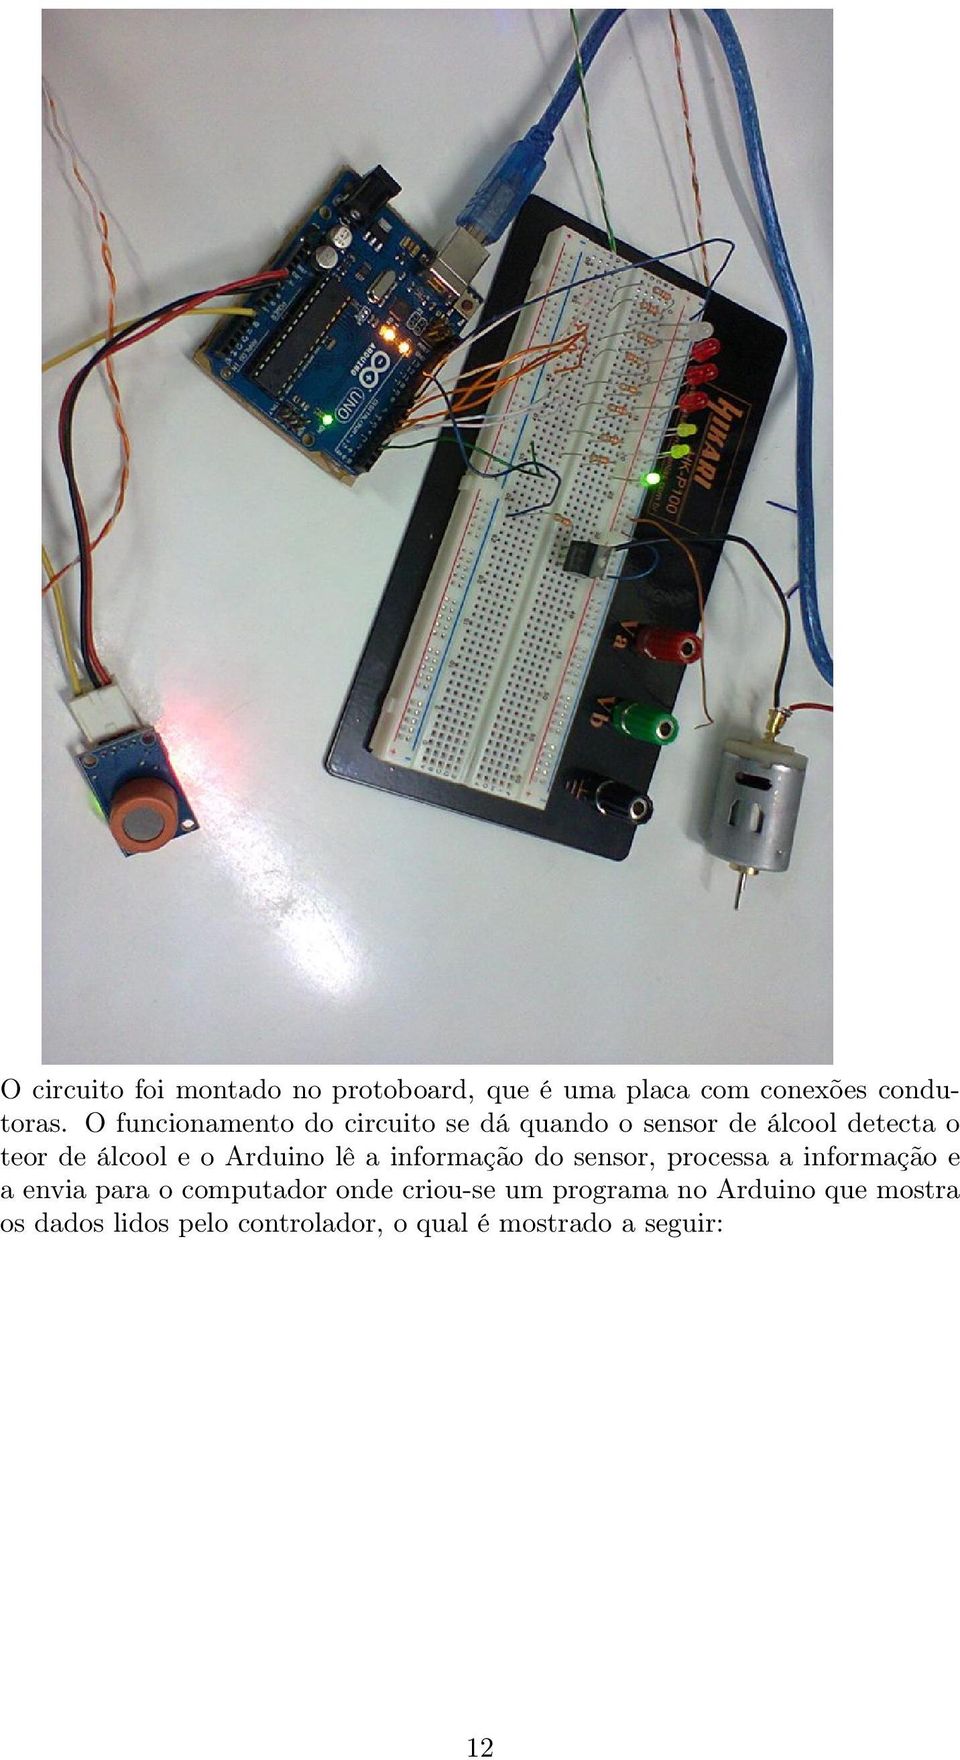 Arduino lê a informação do sensor, processa a informação e a envia para o computador onde